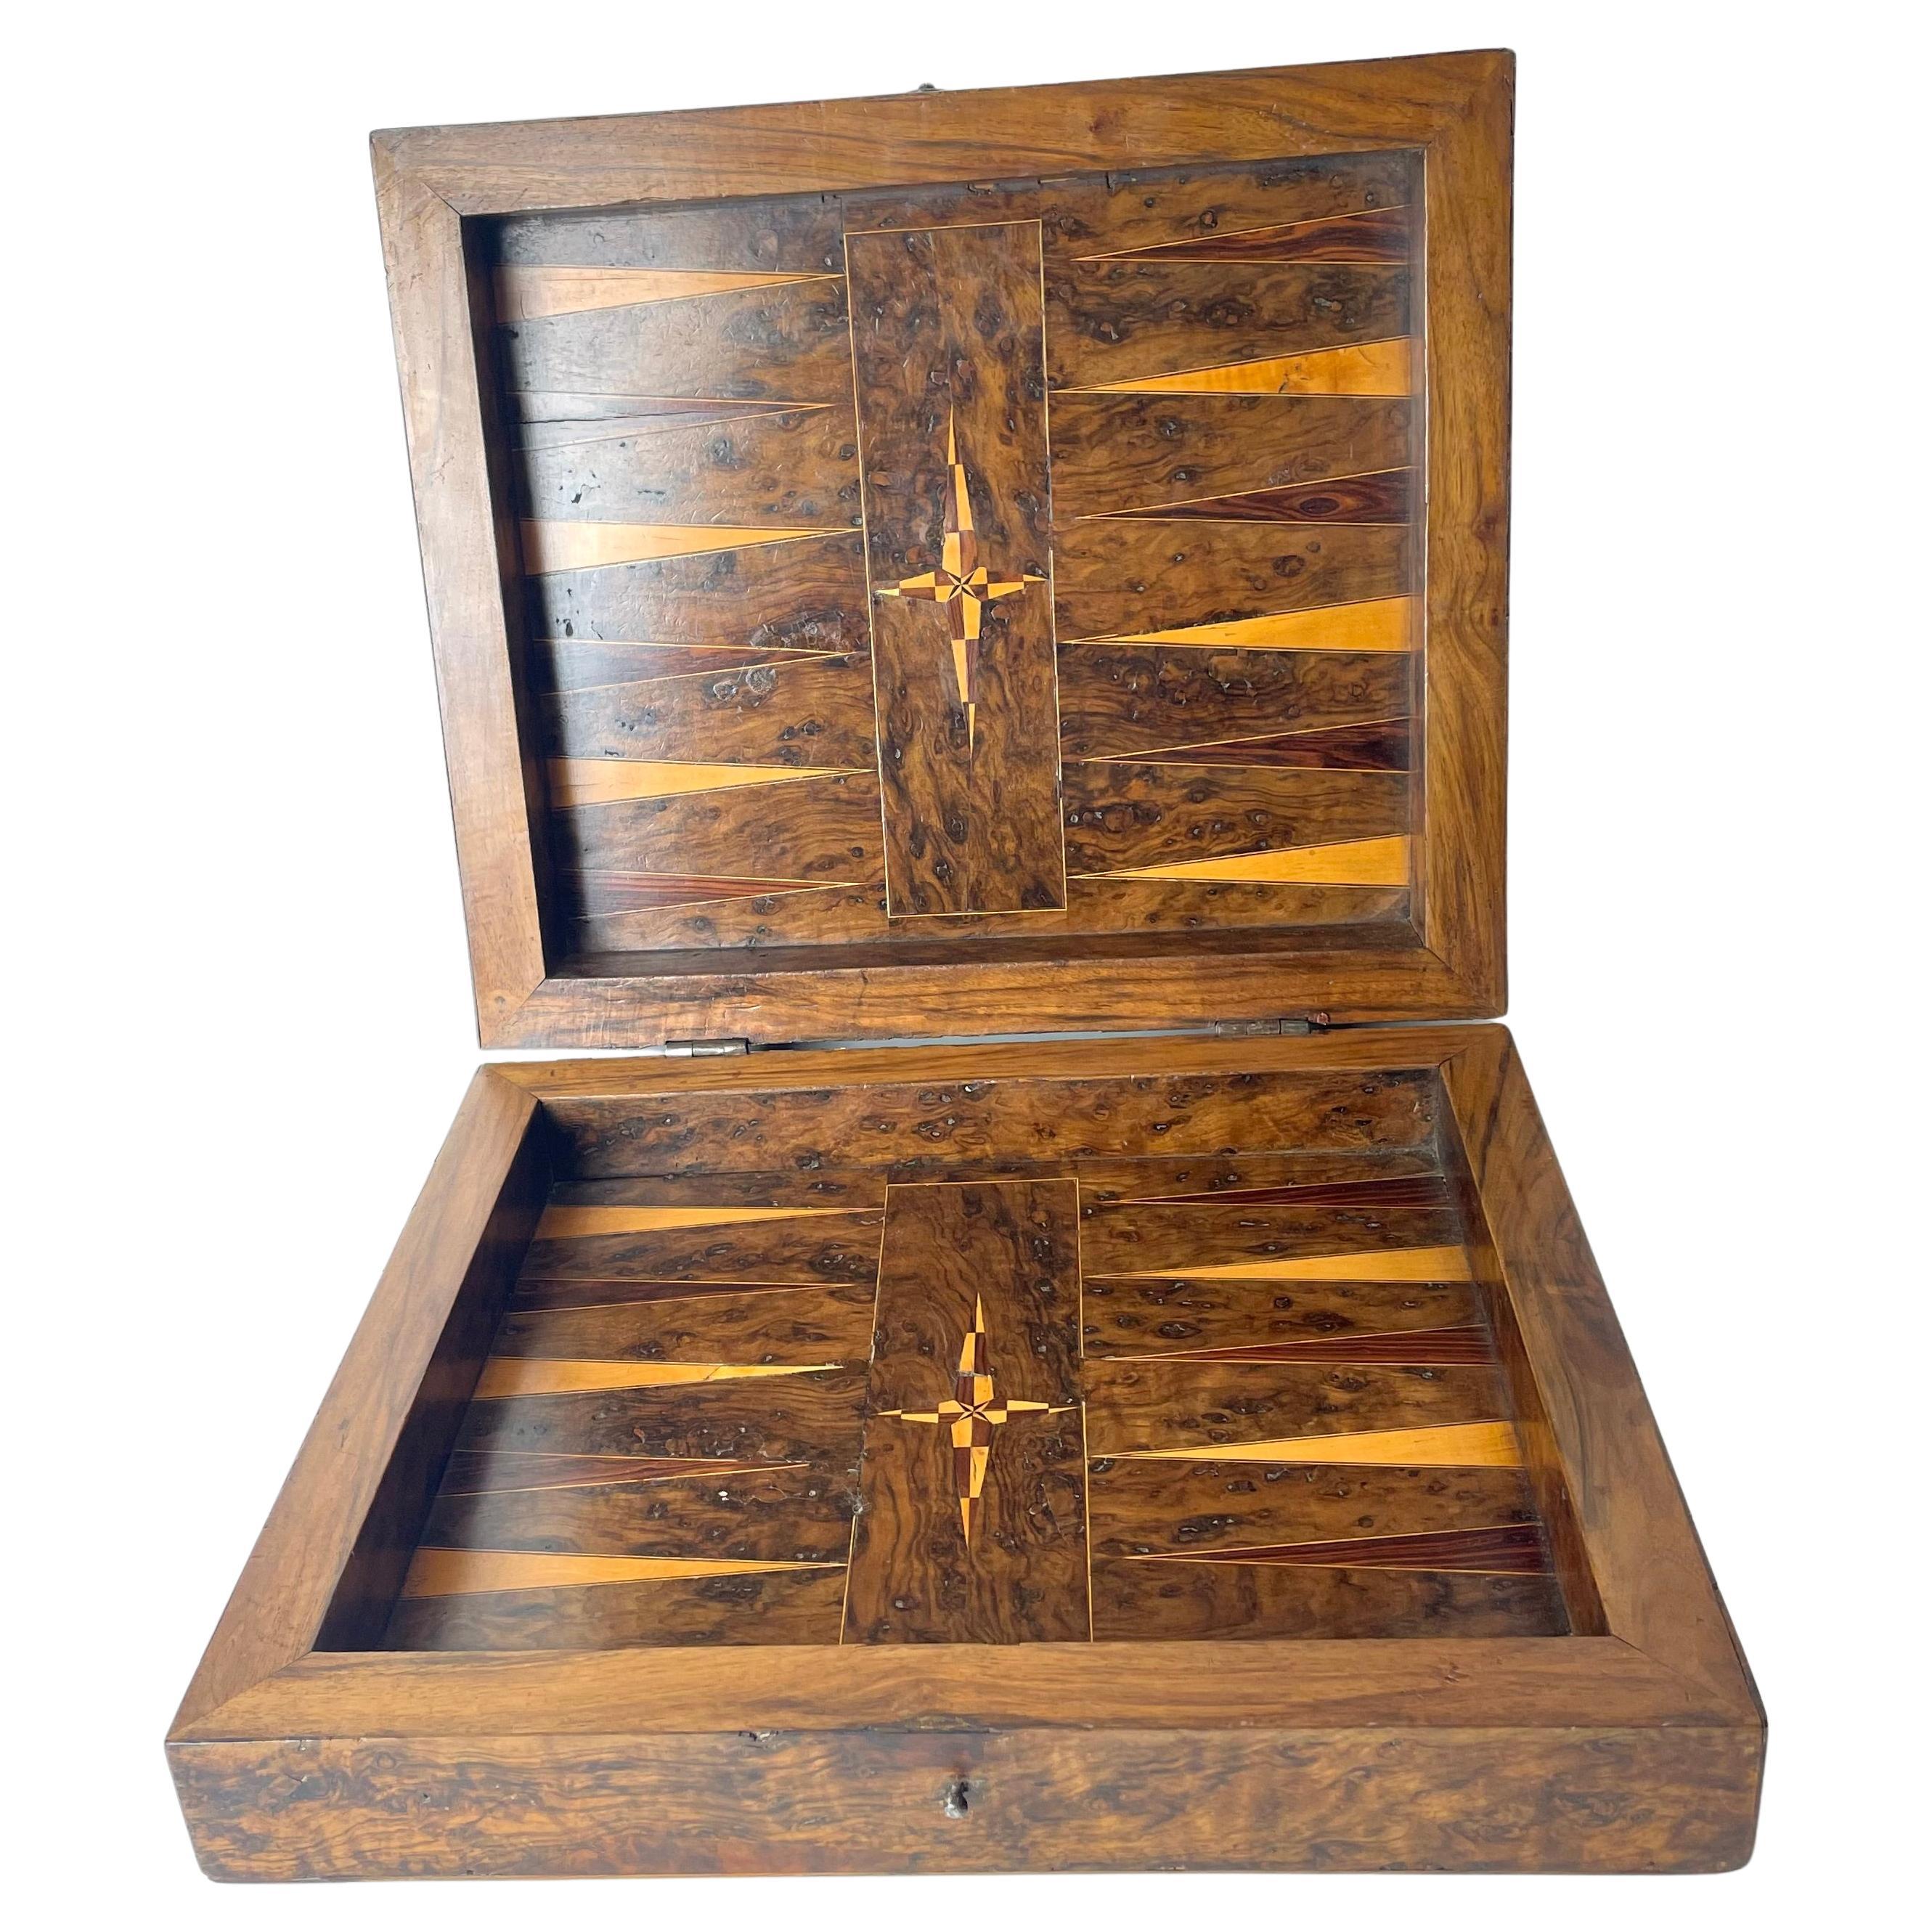 Boîte de jeux de backgammon baroque tardive décorée d'un riche intérieur en bois.  